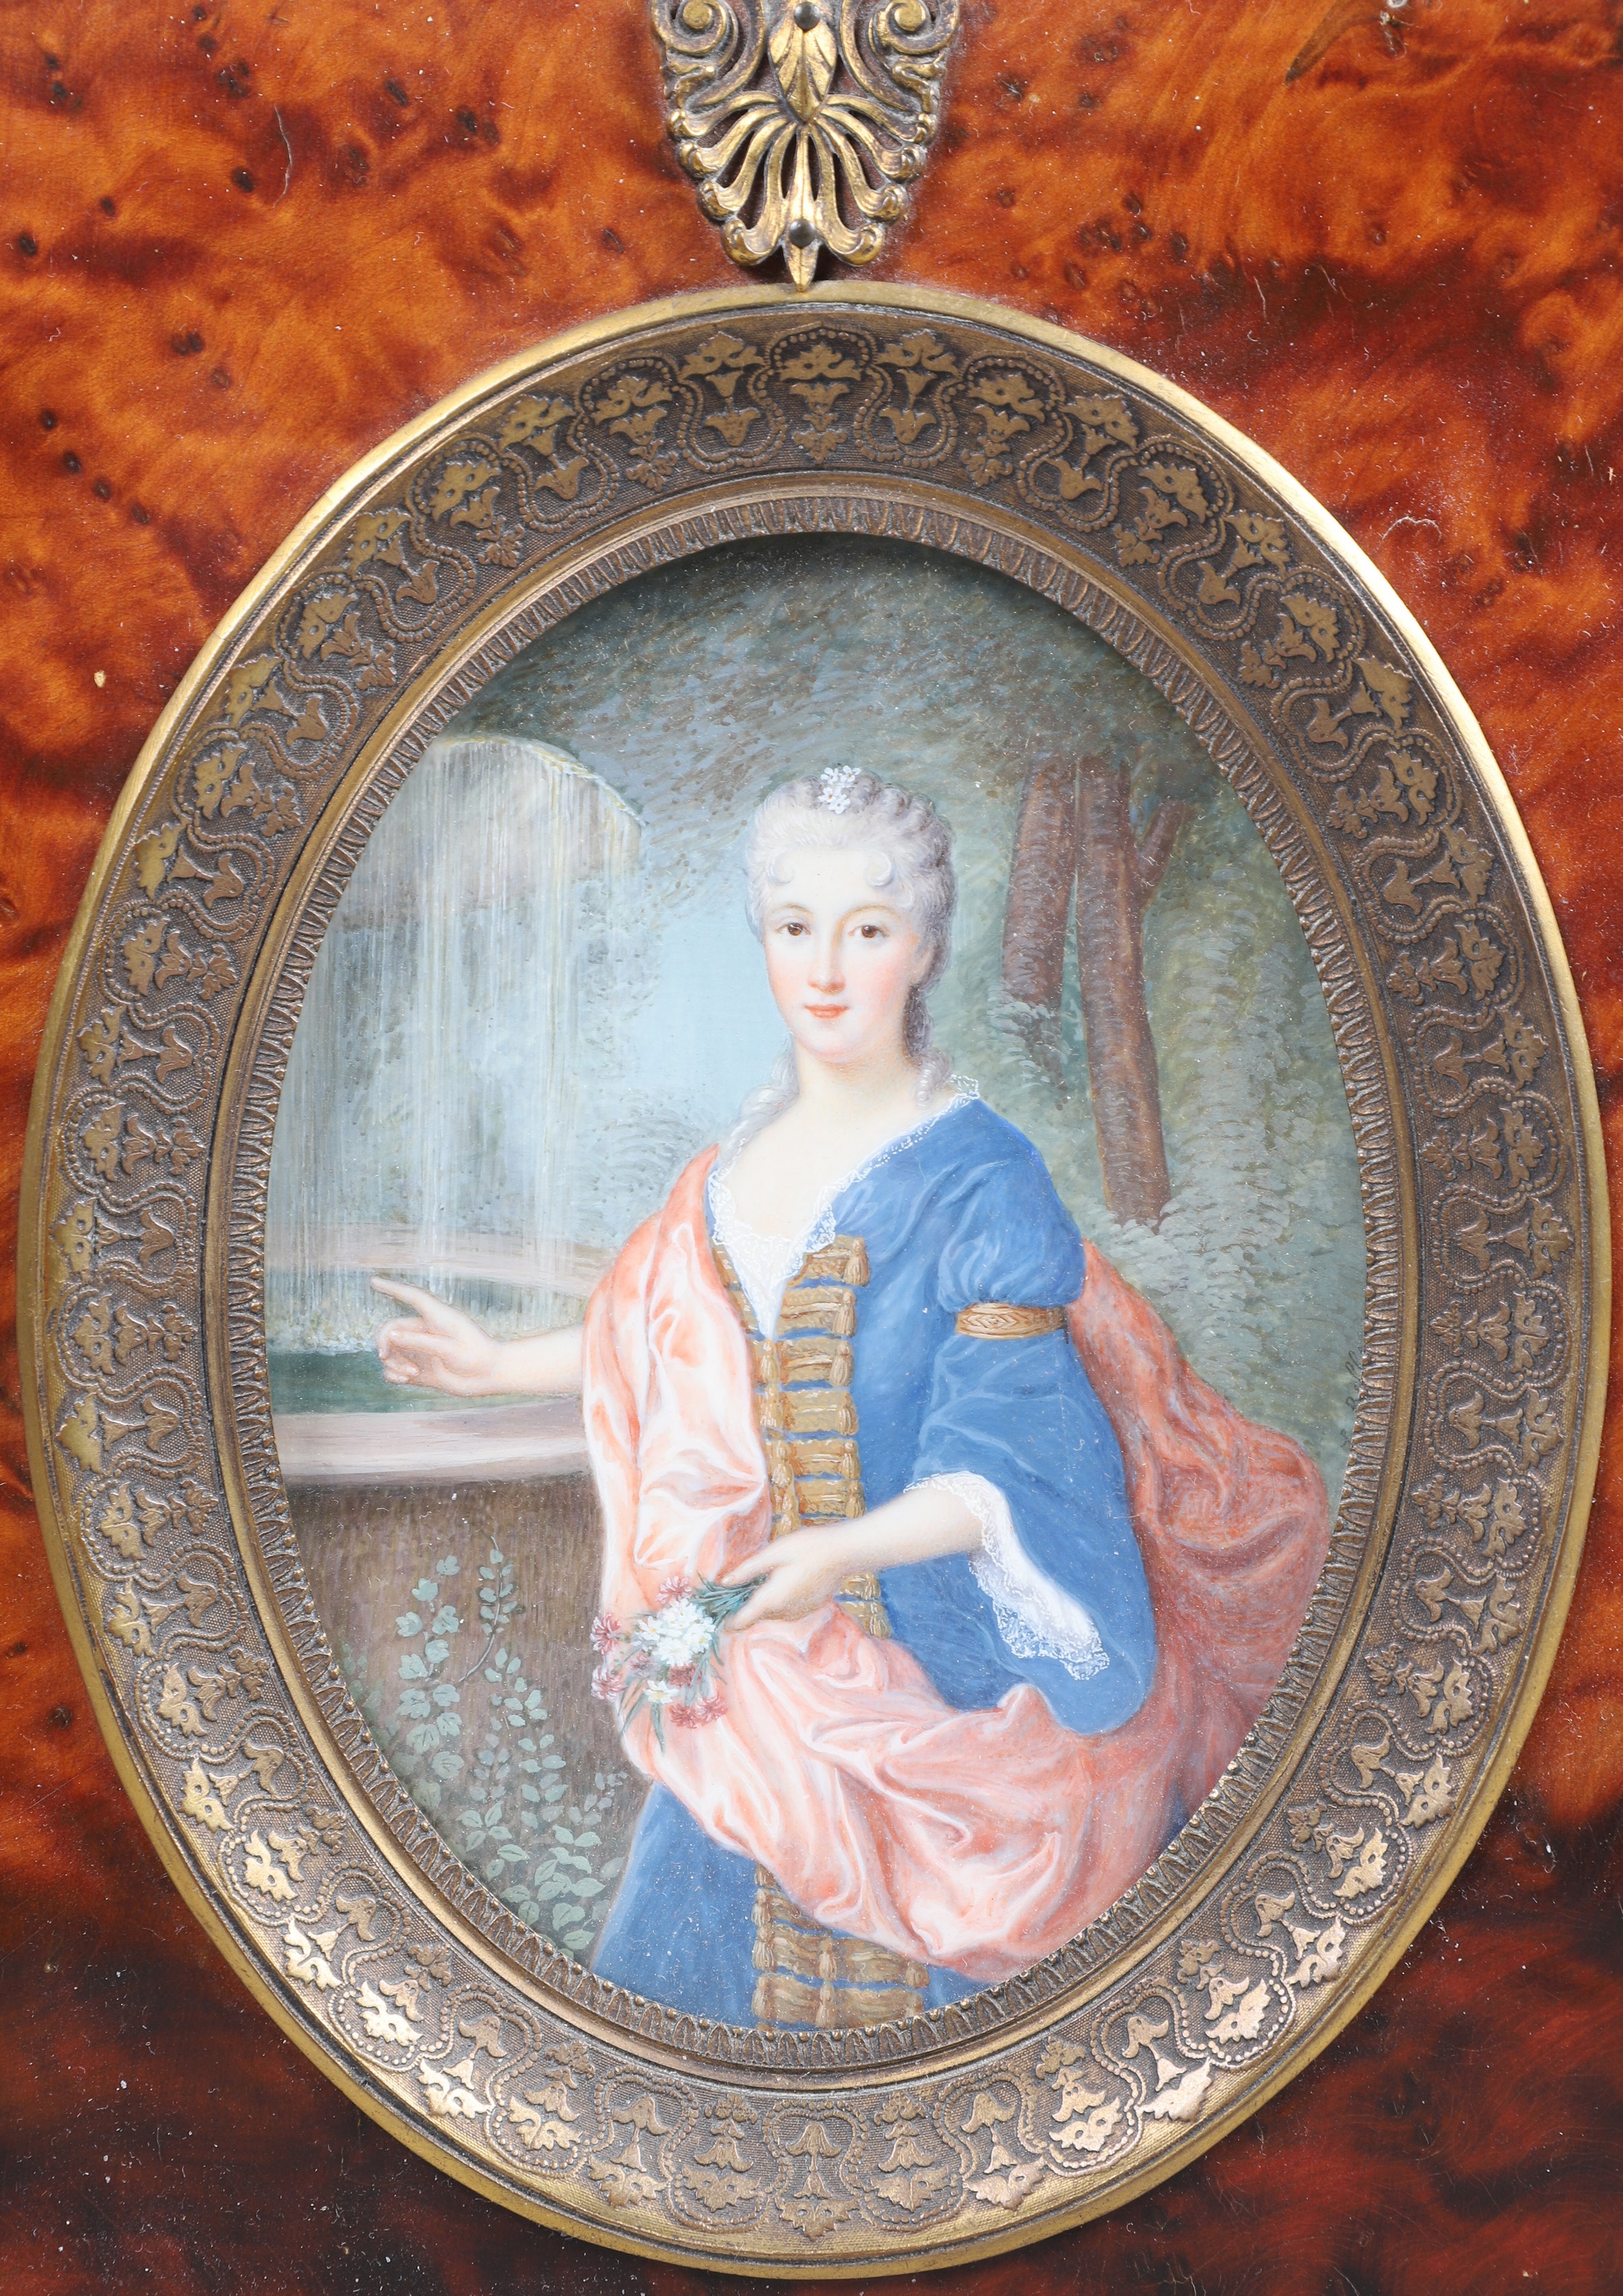 Watercolor portrait of a woman 2e0ed0